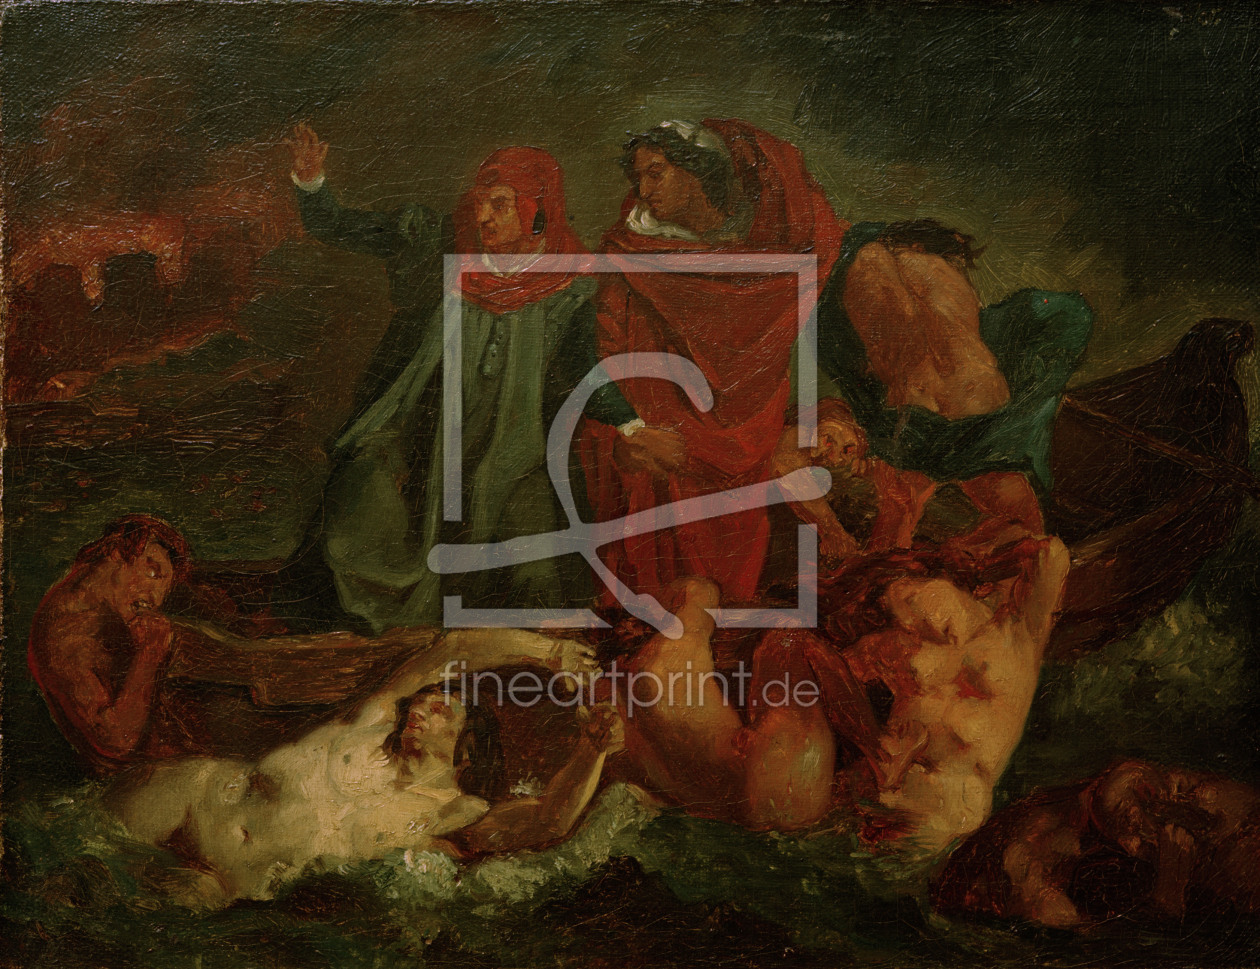 Bild-Nr.: 30000110 Feuerbach nach Delacroix, Dante u.Vergil erstellt von Feuerbach, Anselm